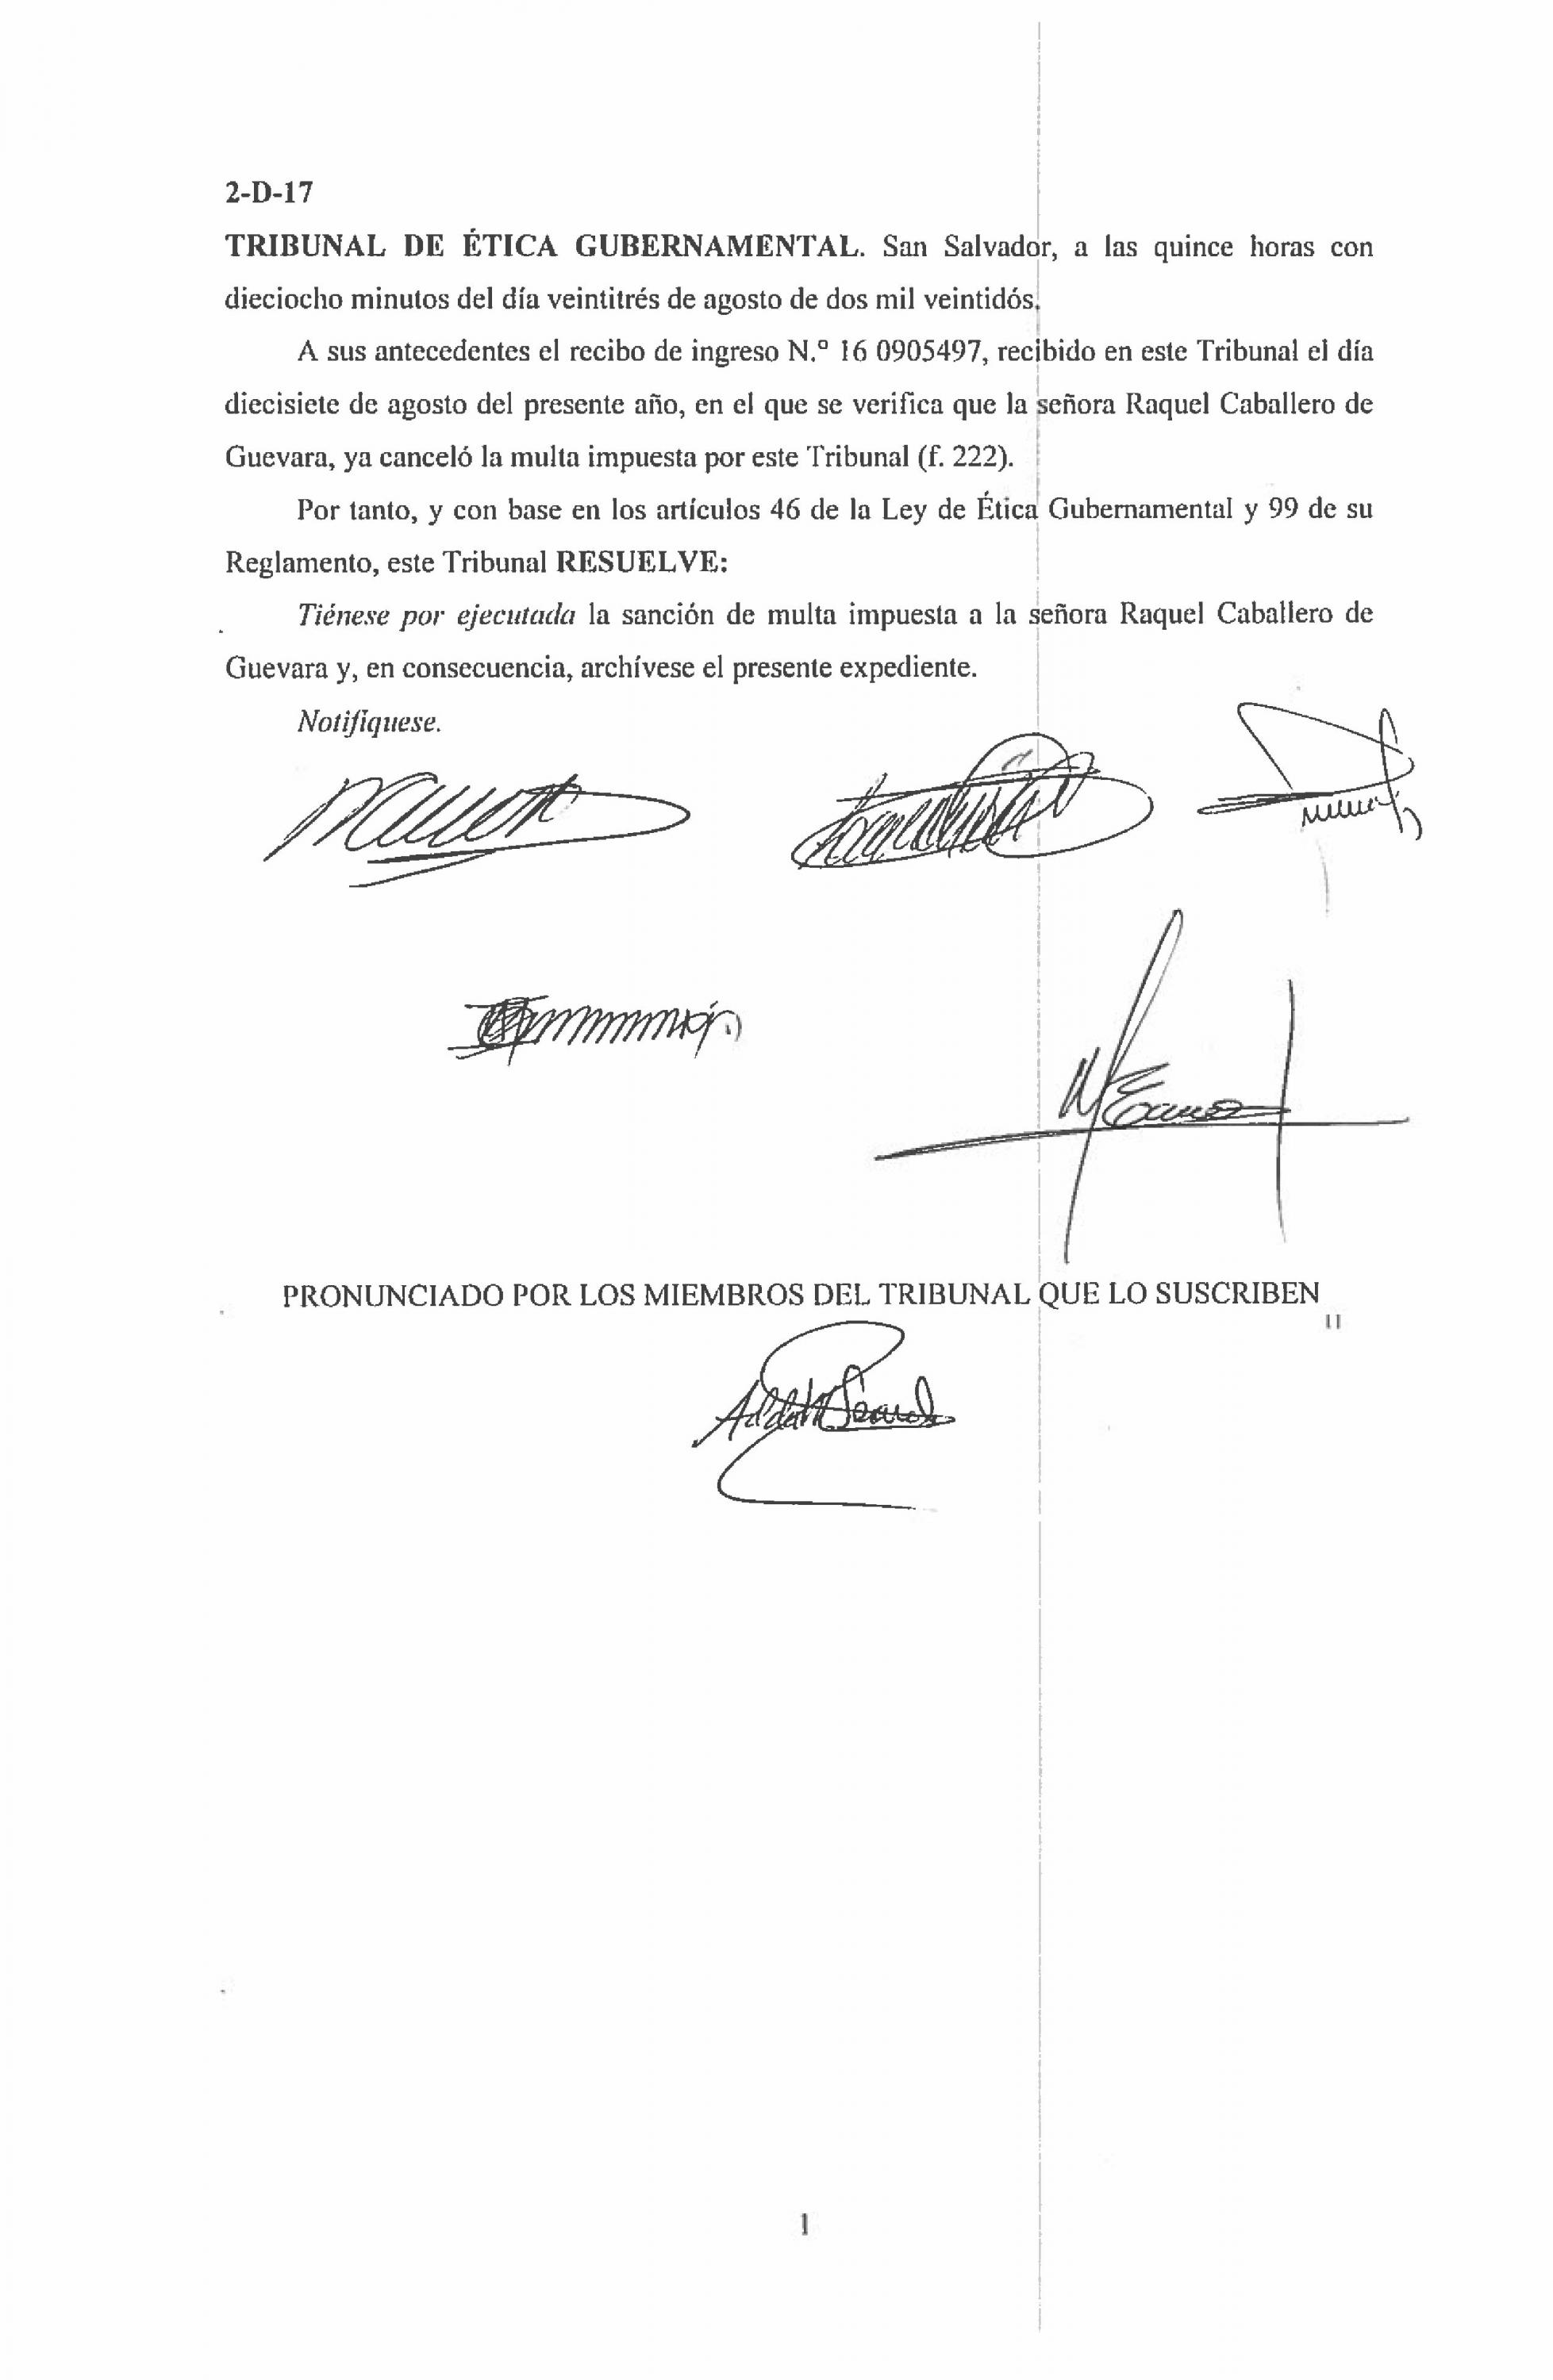 La exprocuradora Caballero de Guevara presentó un recibo del pago de multas el 17 de agosto de 2022 y el Tribunal de Ética Gubernamental cerró el caso. 20 días después, la exprocuradora será entrevistada por los diputados.